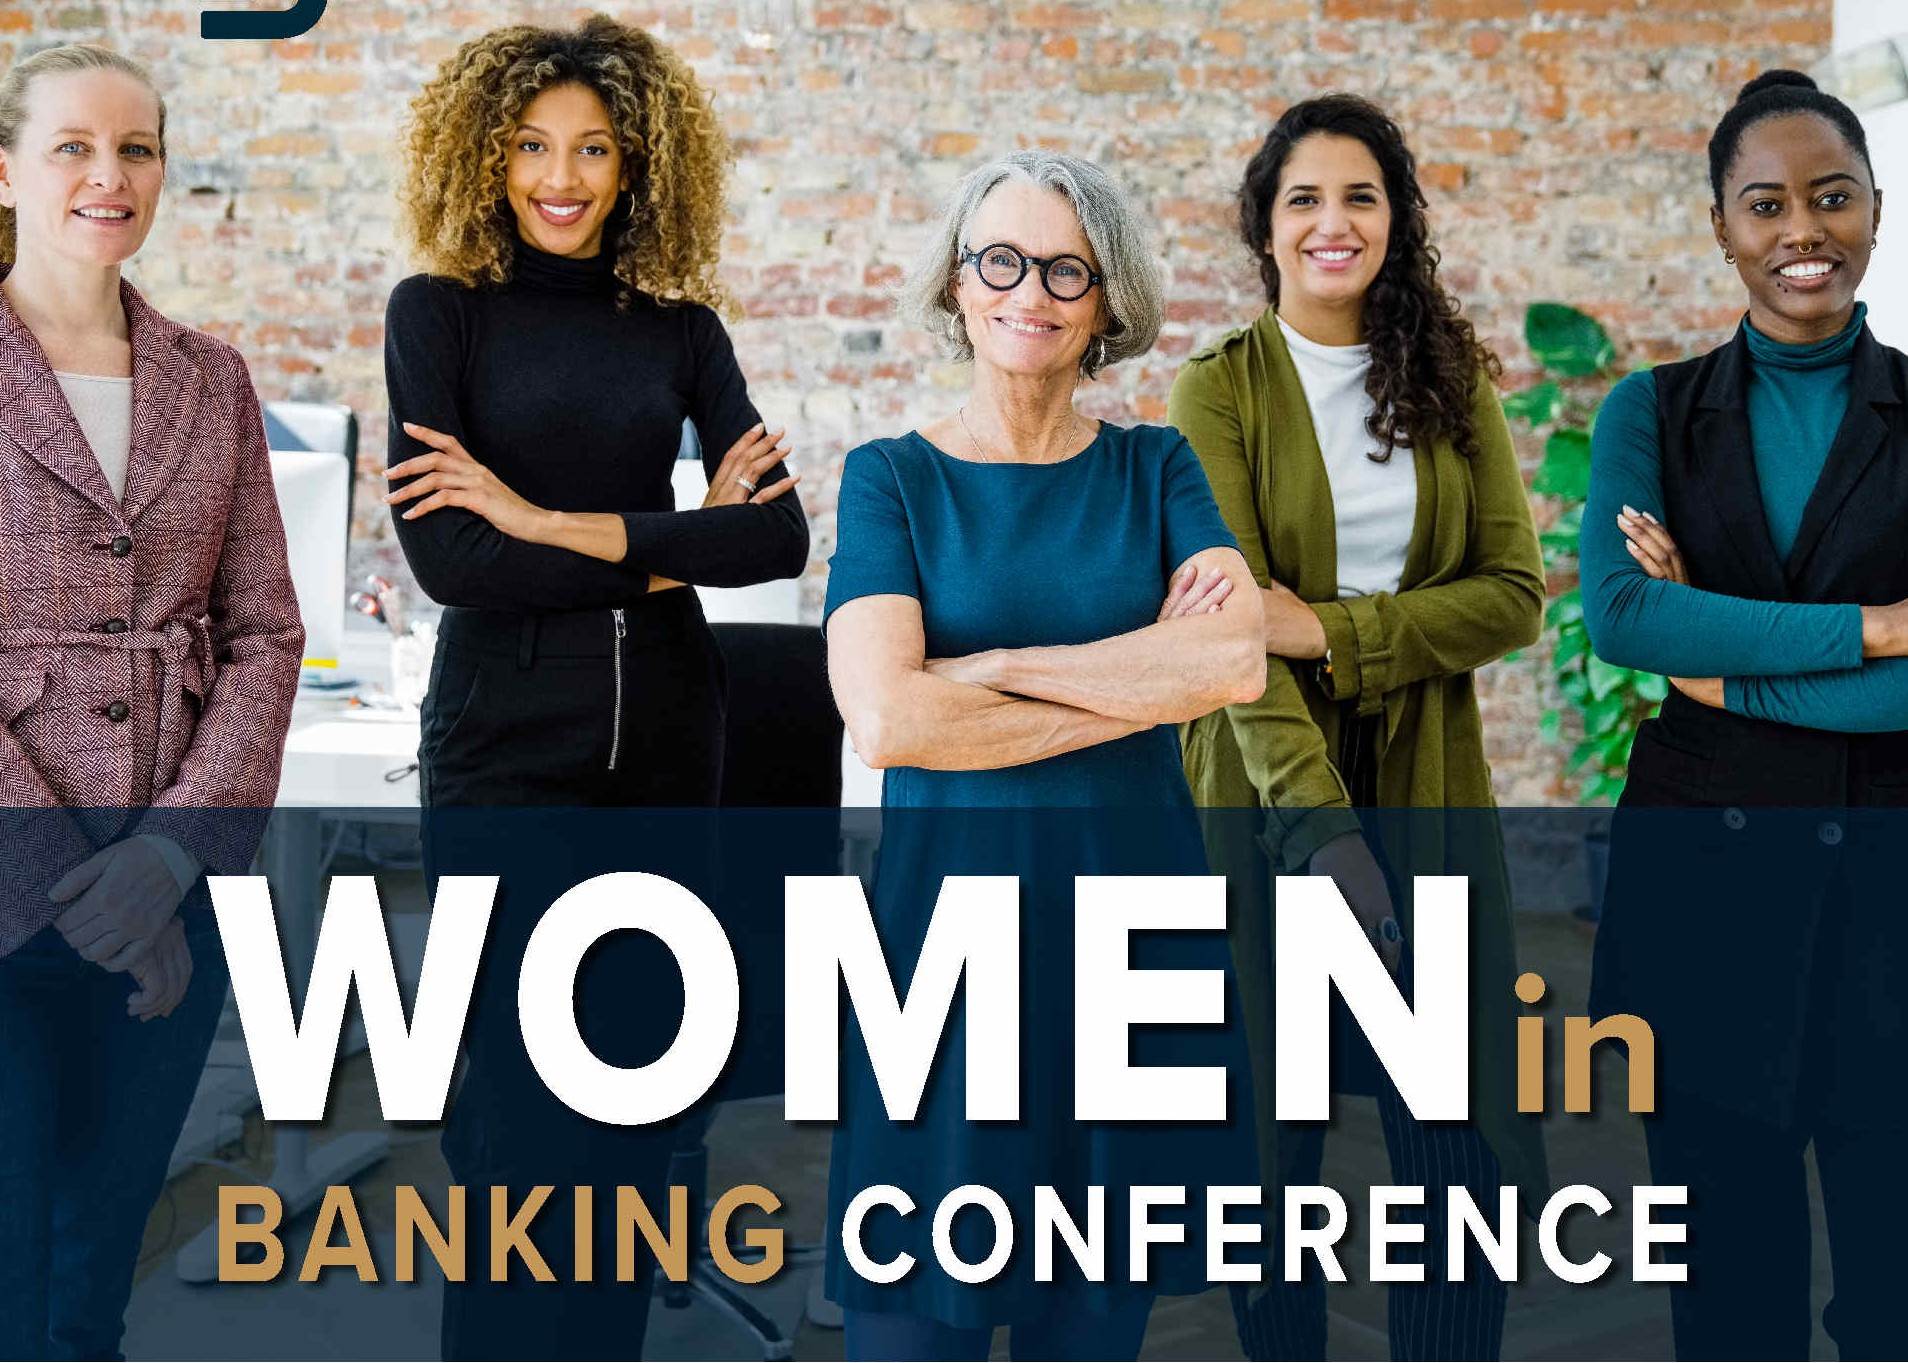 WOMEN IN BANKING